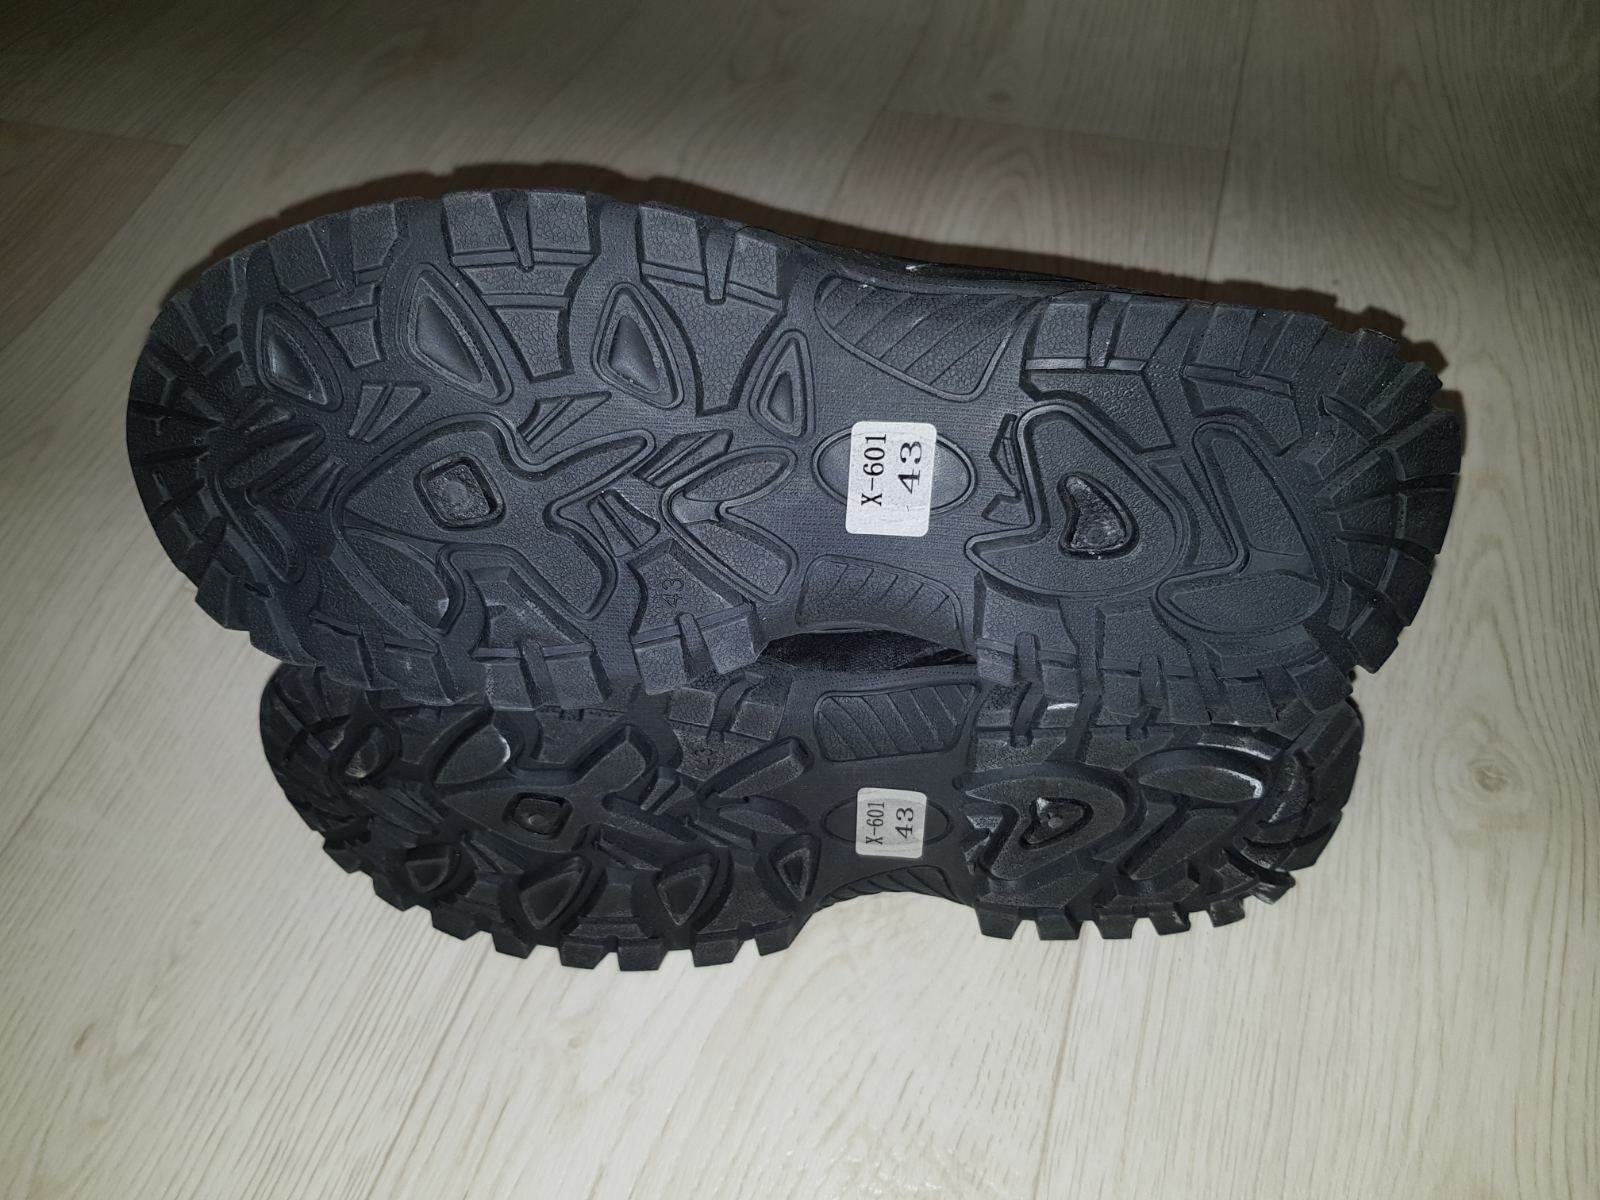 Новые мужские зимние ботинки кроссовки с мехом чёрного цвета 43 размер